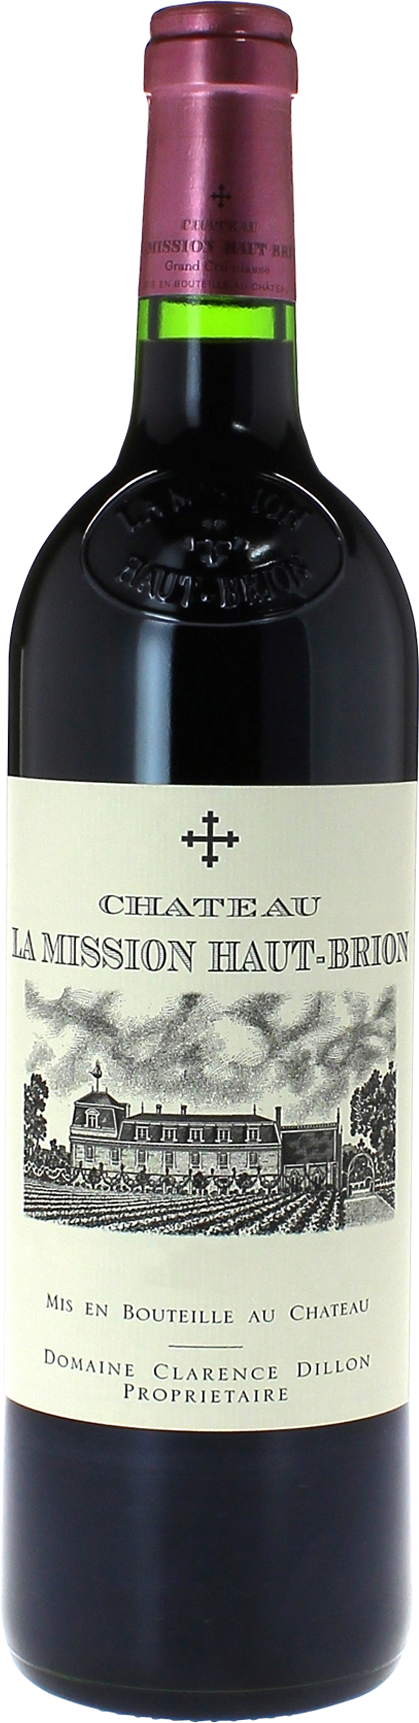 La Mission Haut-Brion 2004